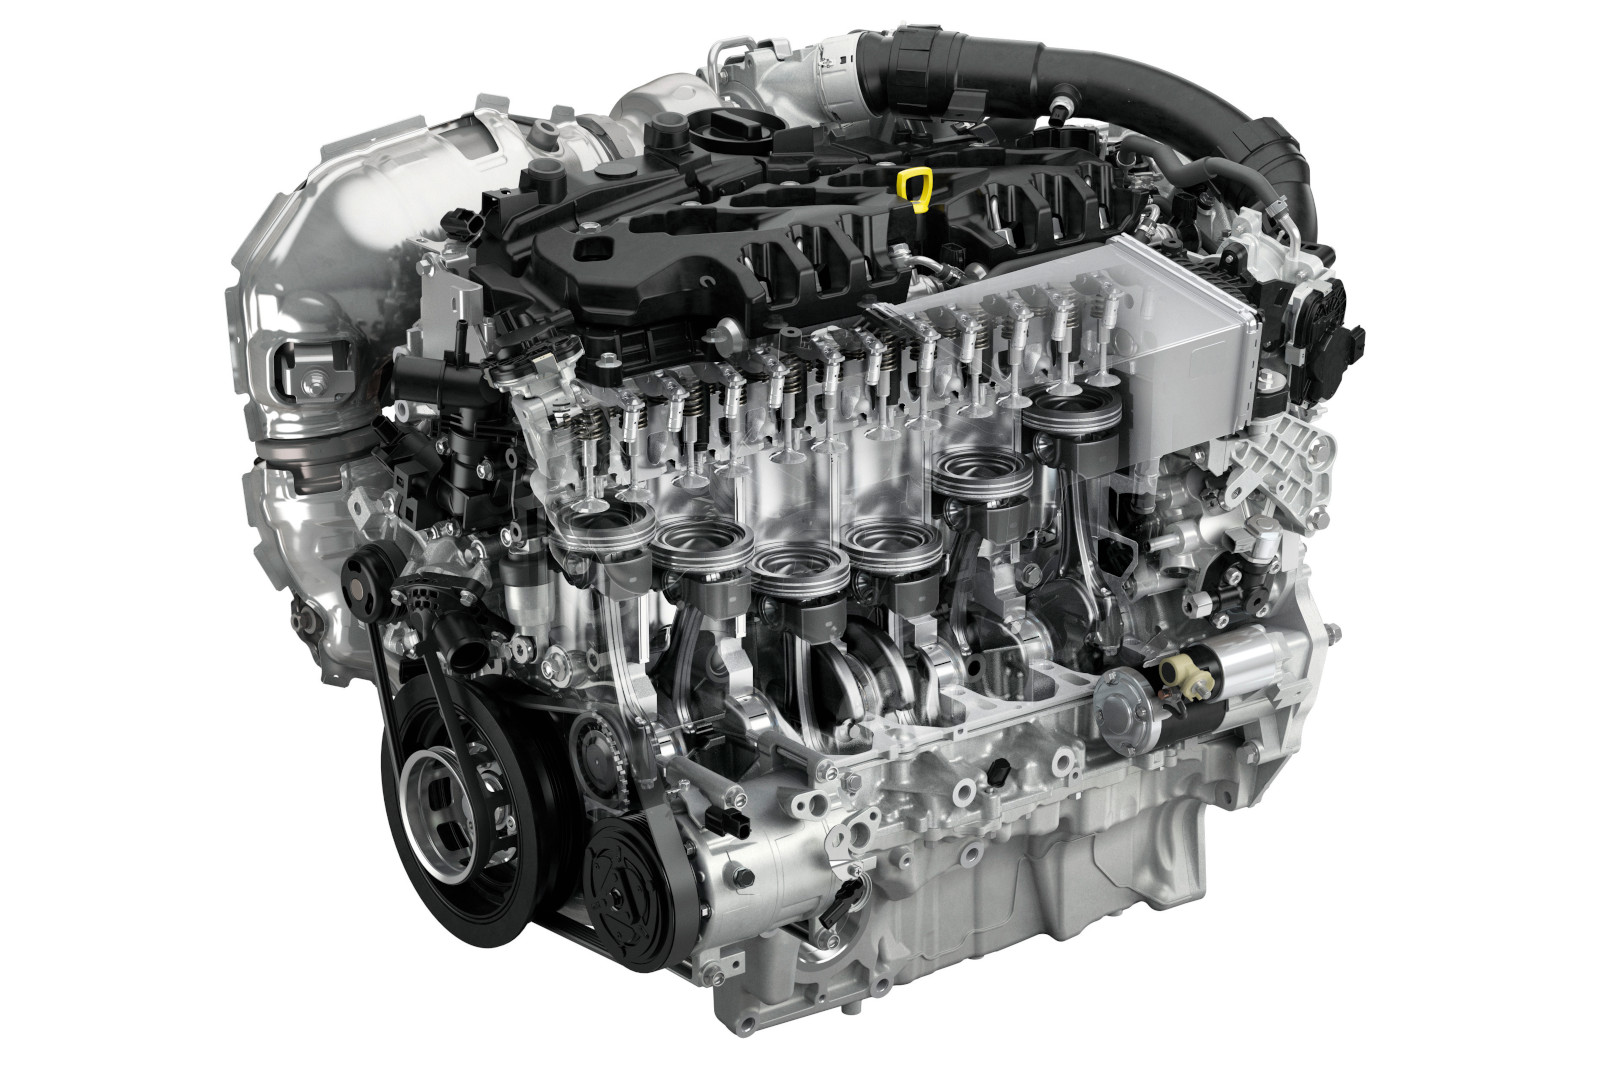 Under the skin: Mazda's diesel lifeline through innovative new engine